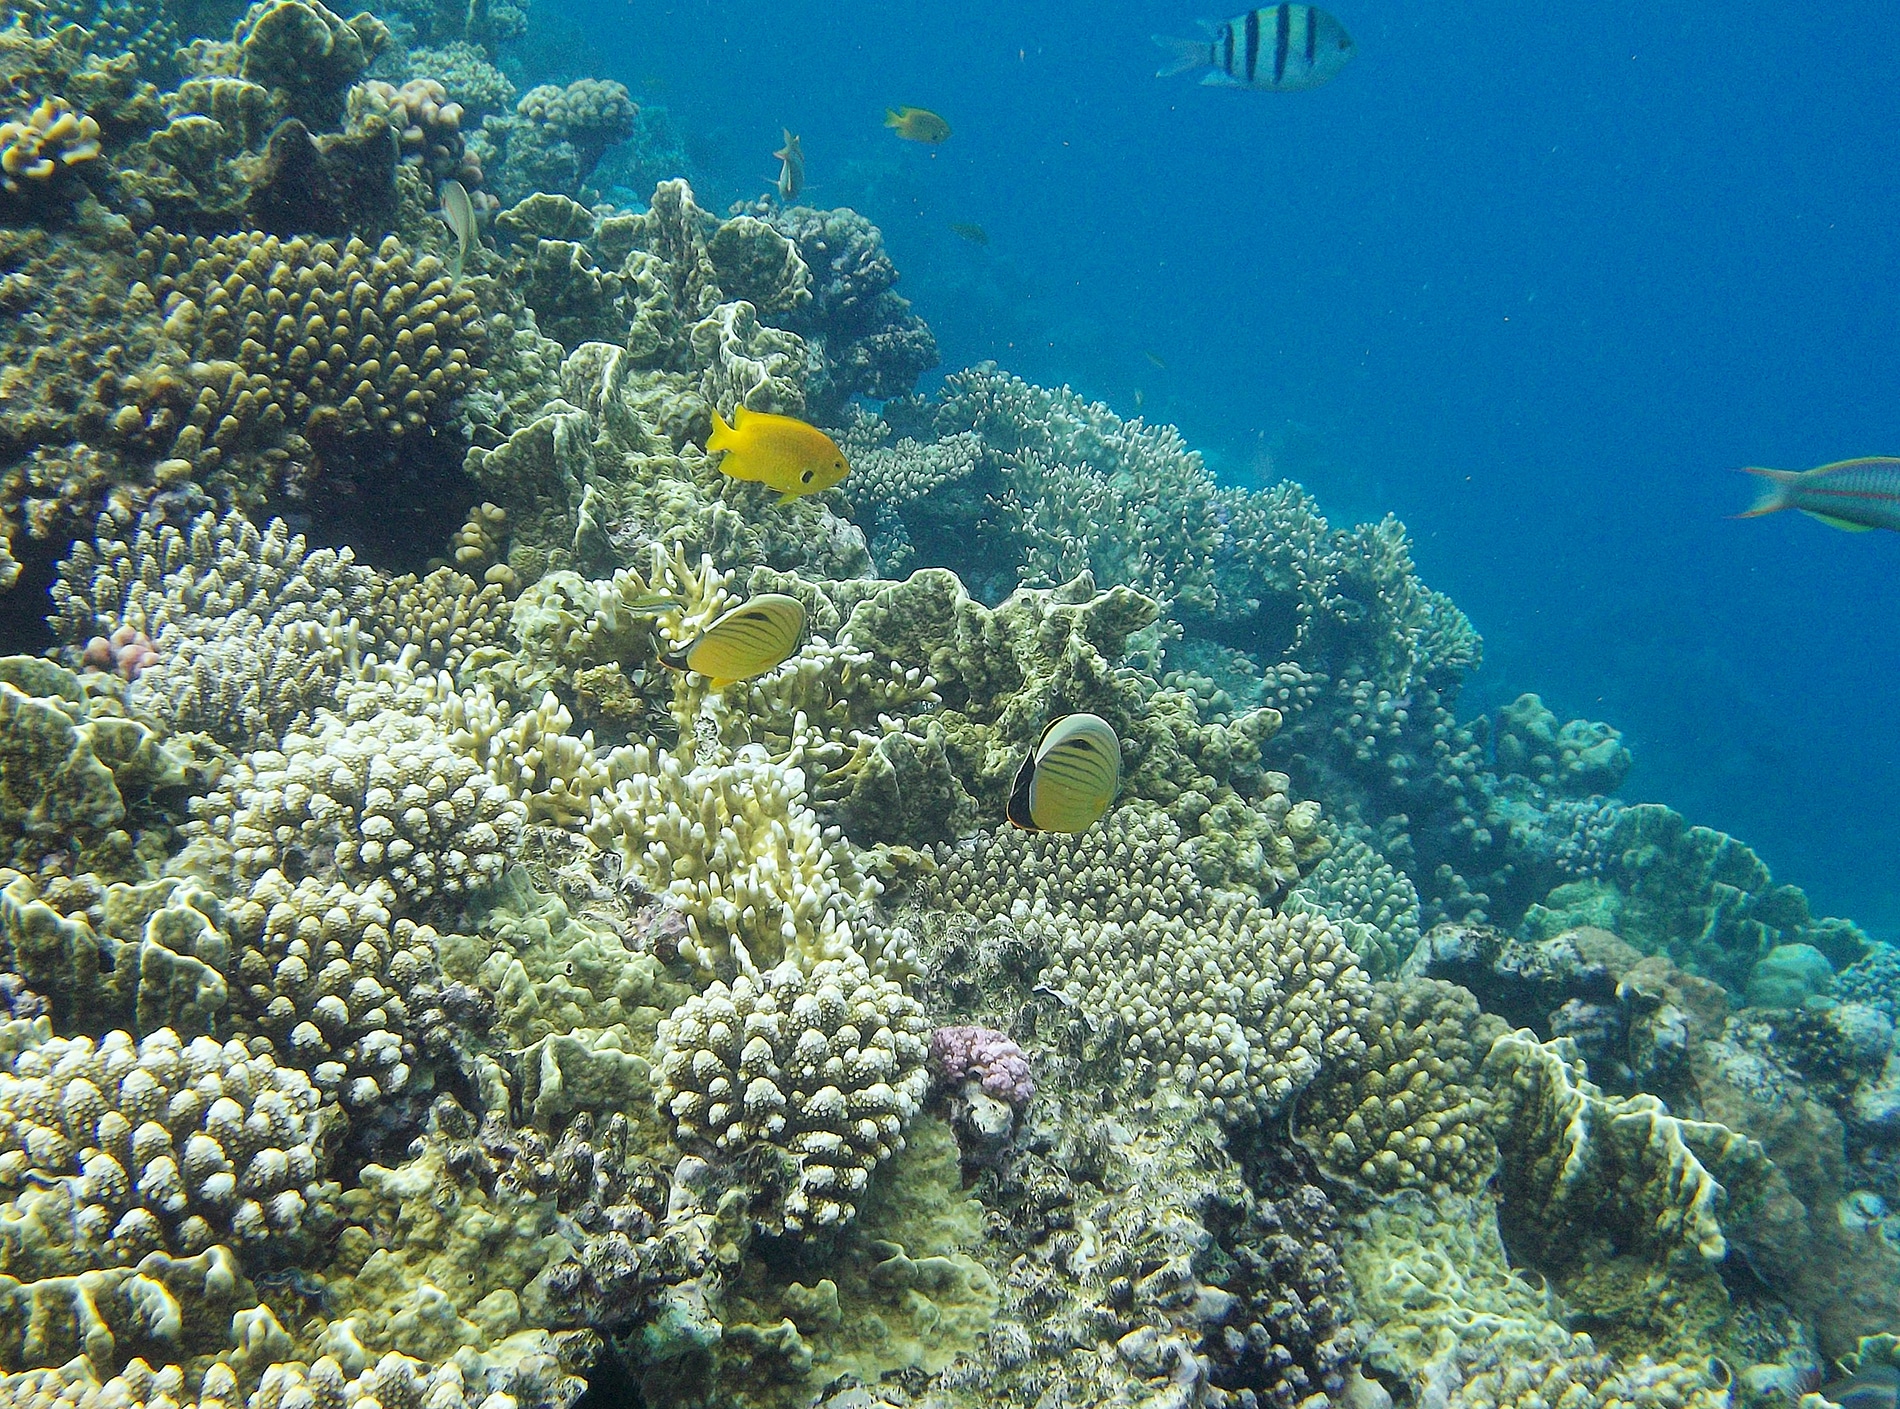 Кораллы и водоросли влияют на экосистему рифа, выделяя в воду различные химические вещества